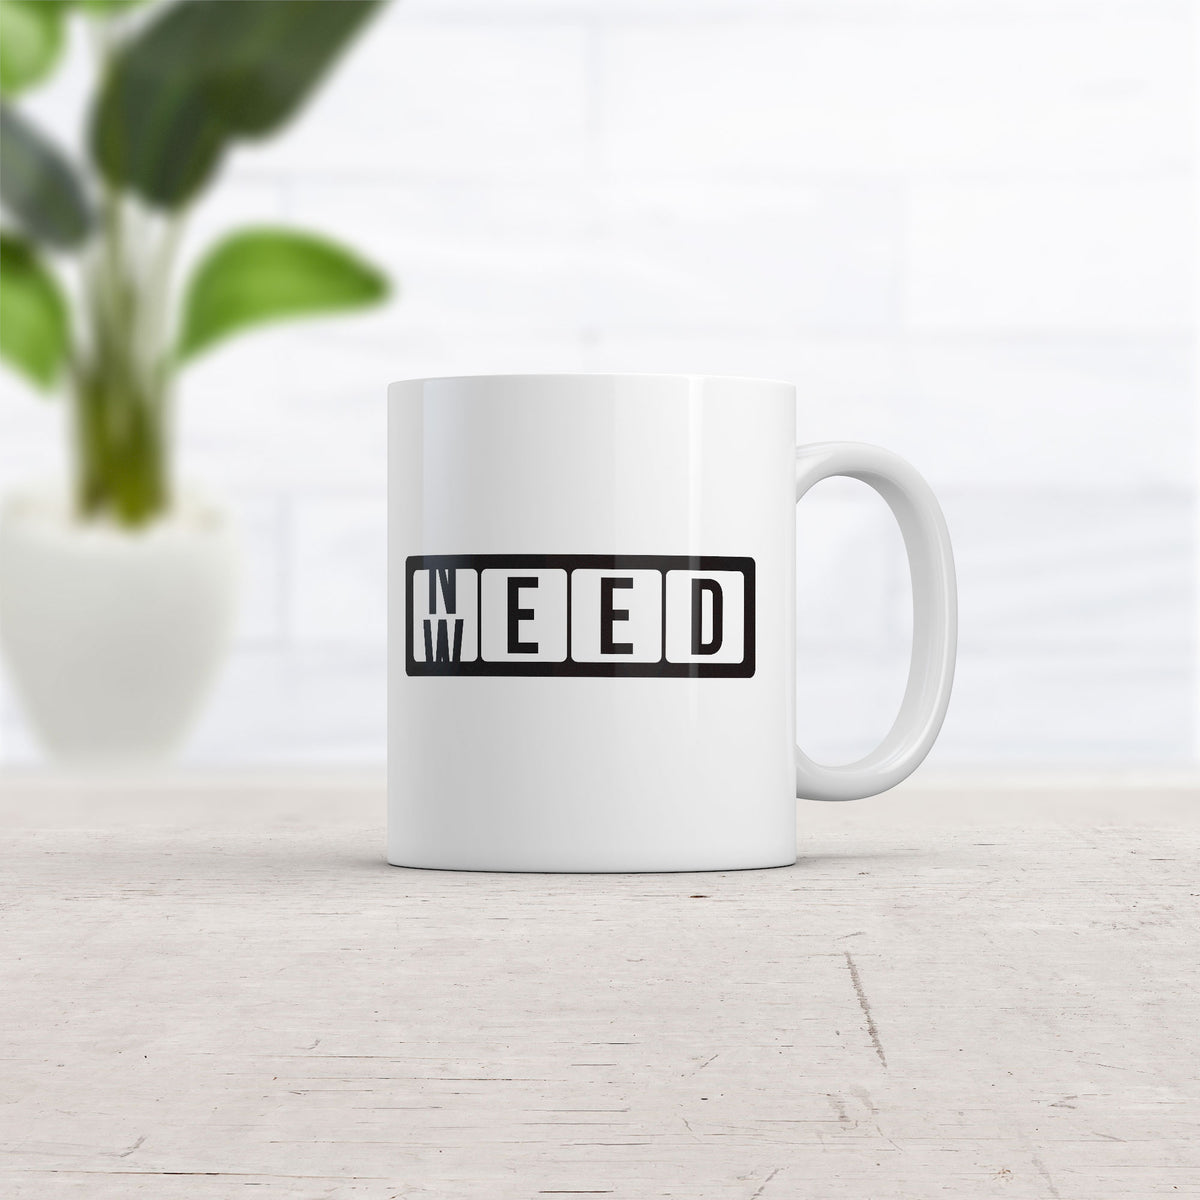 Need Weed Mug